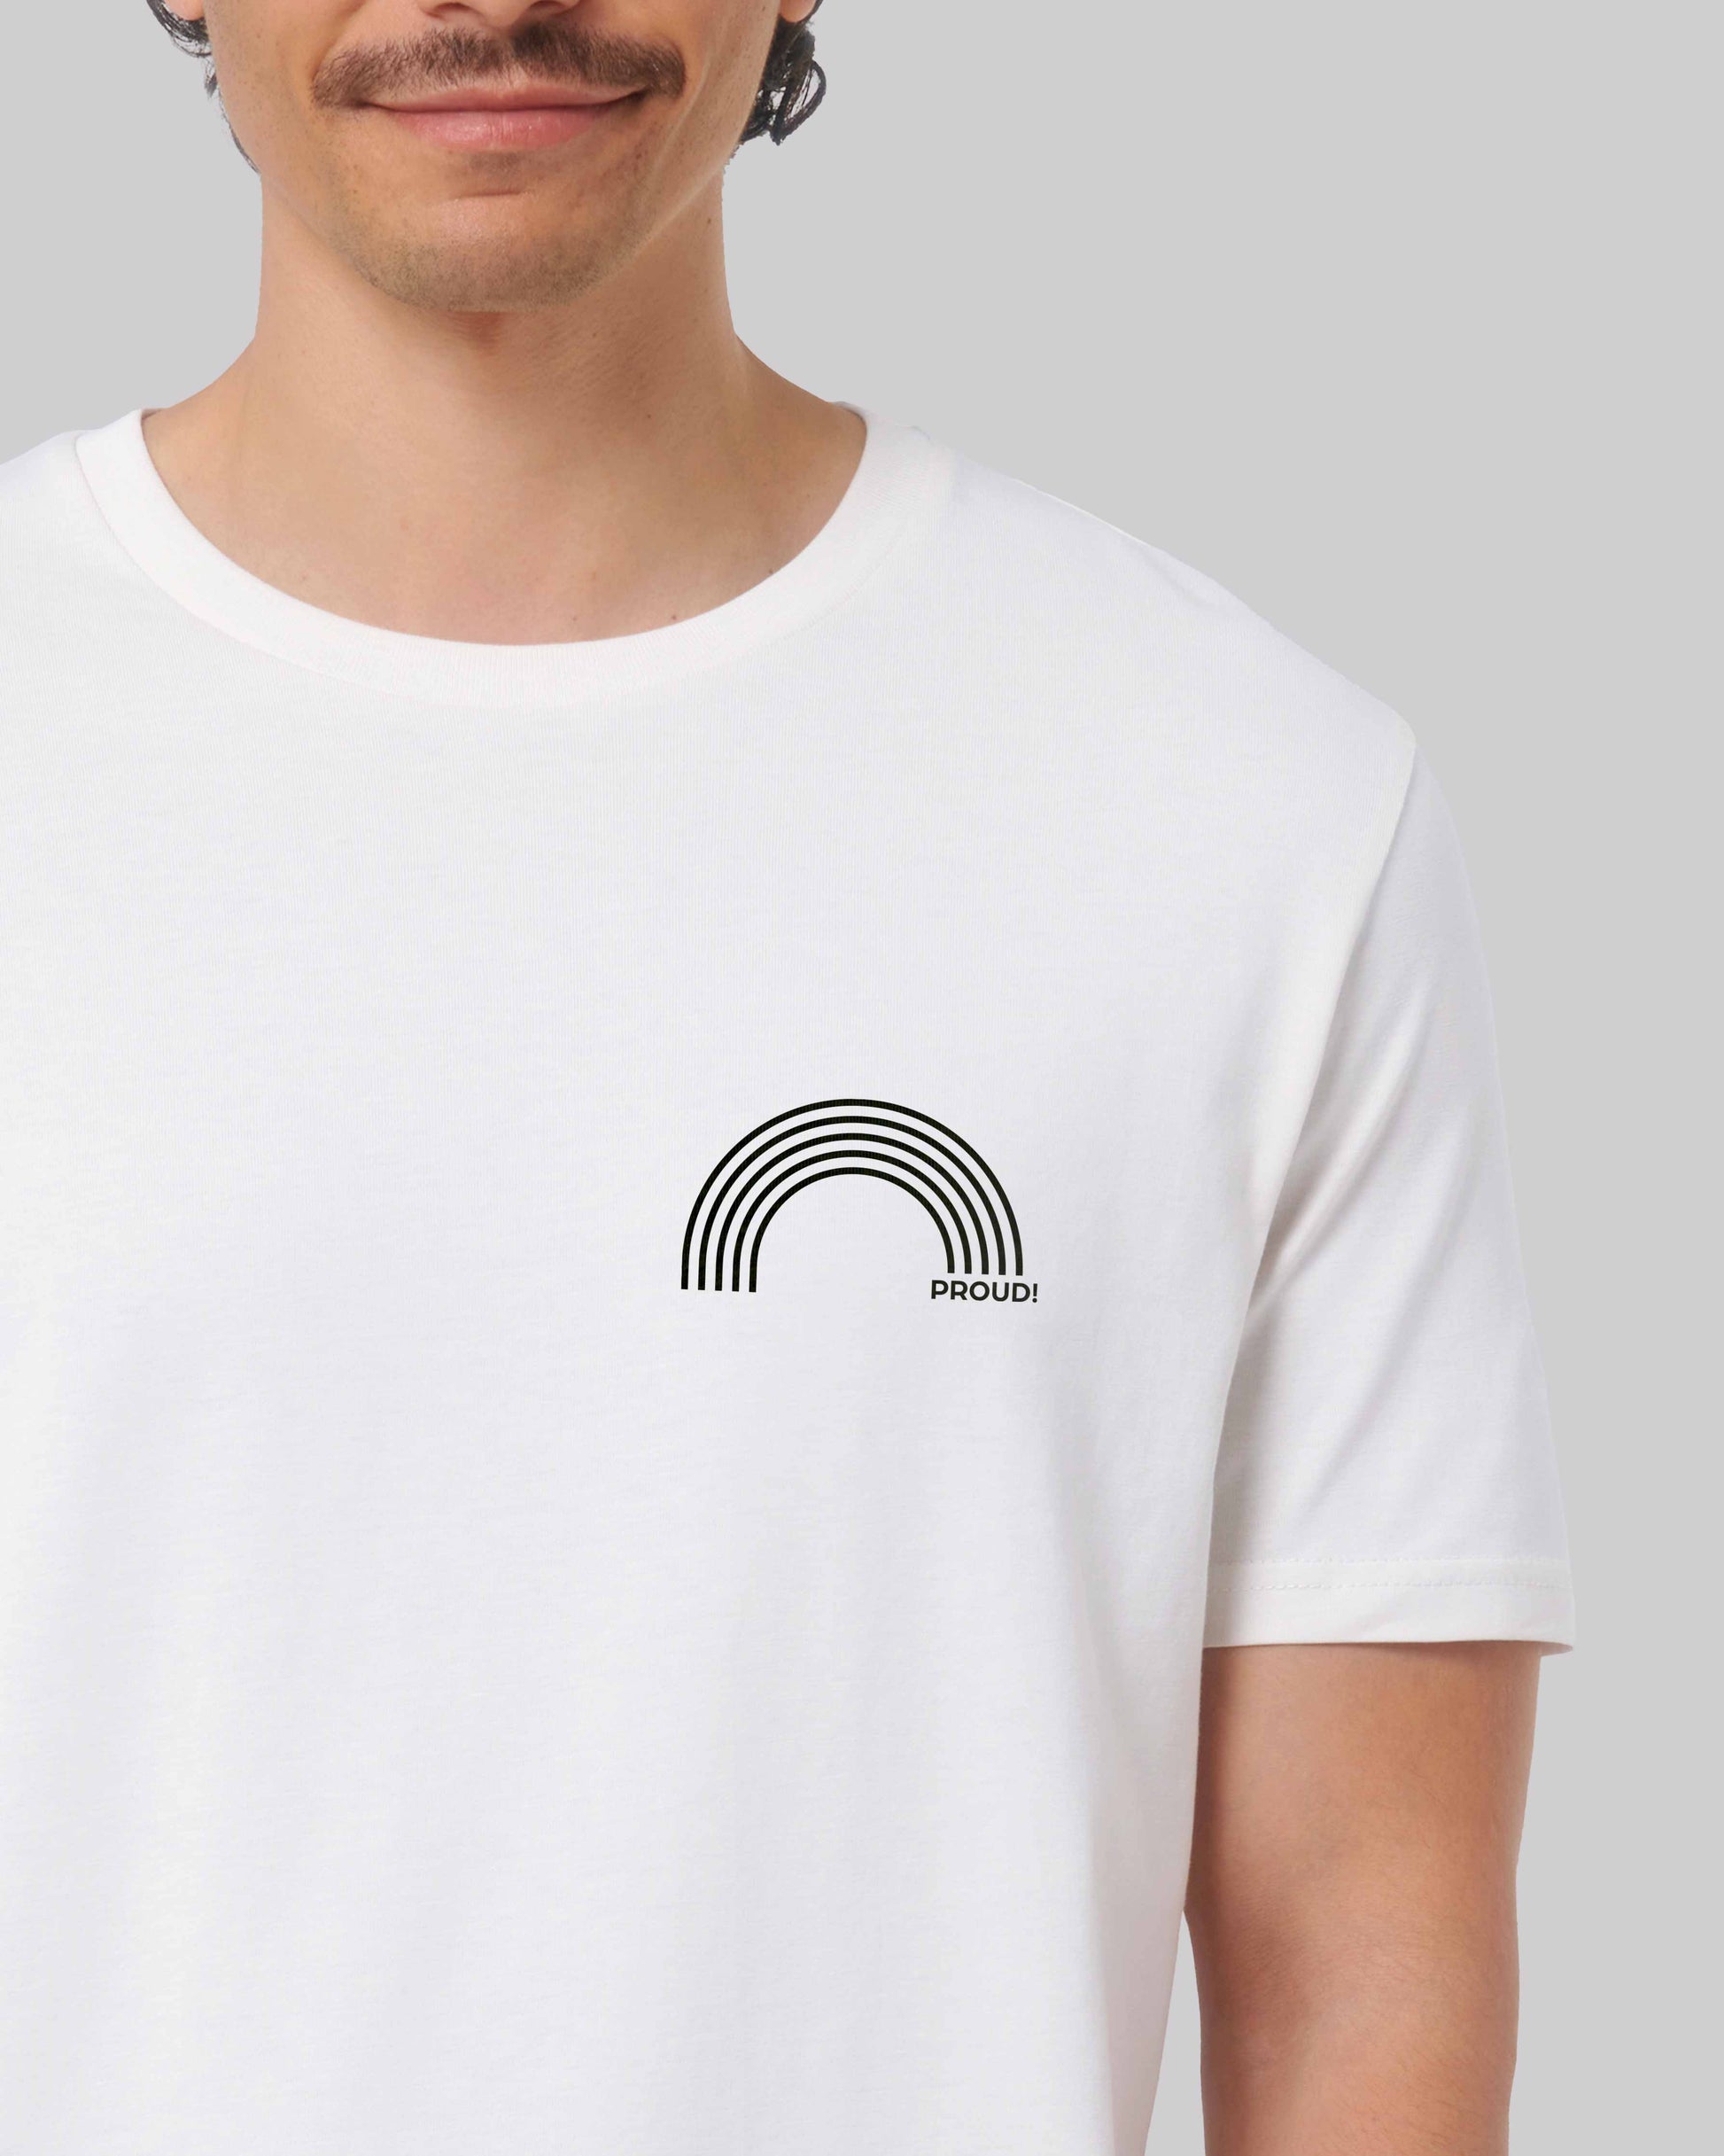 EINHORST® unisex Organic Shirt in Weiß mit dem Motiv "proud Regenbogen" in der Kombination schwarzer Regenbogen mit schwarzer Schrift, Bild von männlicher Person mit Shirt